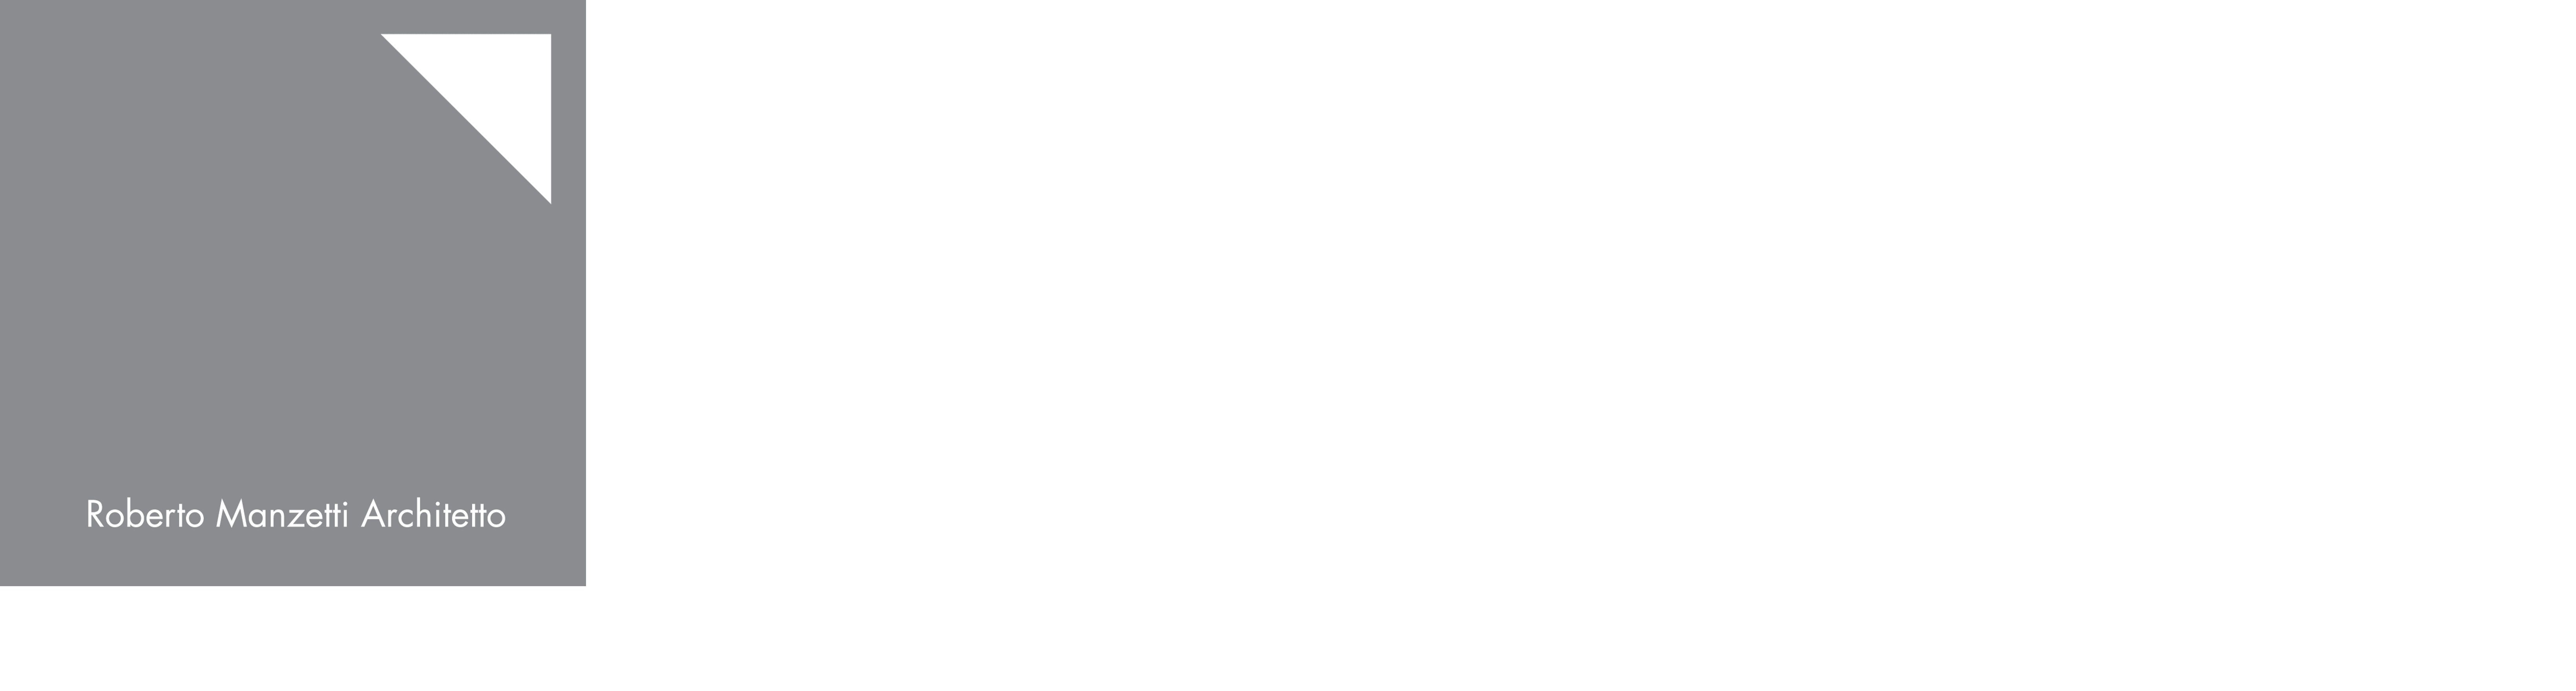 Roberto Manzetti Architetto 